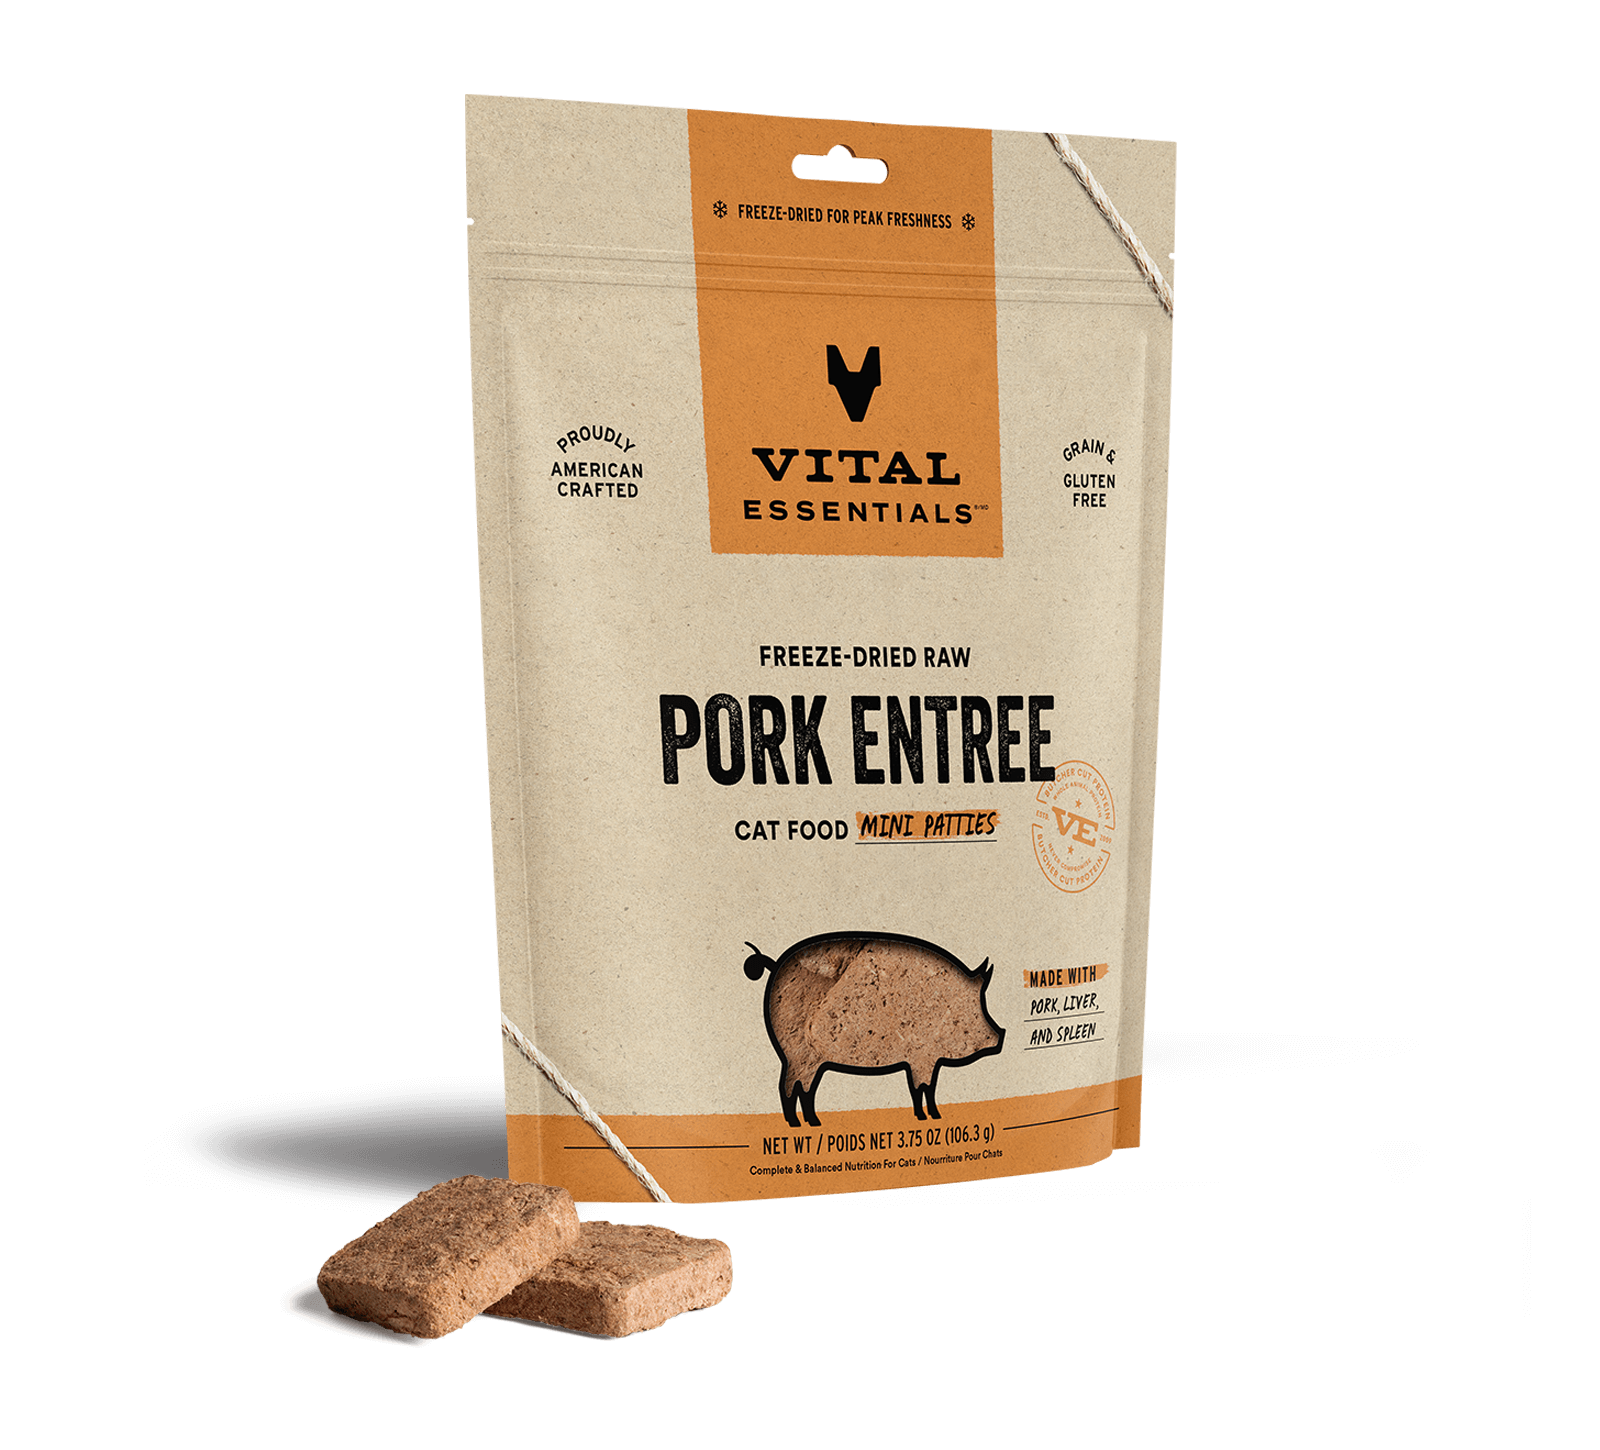 Vital Essentials Freeze-Dried Raw Pork Entree Cat Food Mini Patties, 3.75 oz - Health/First Aid